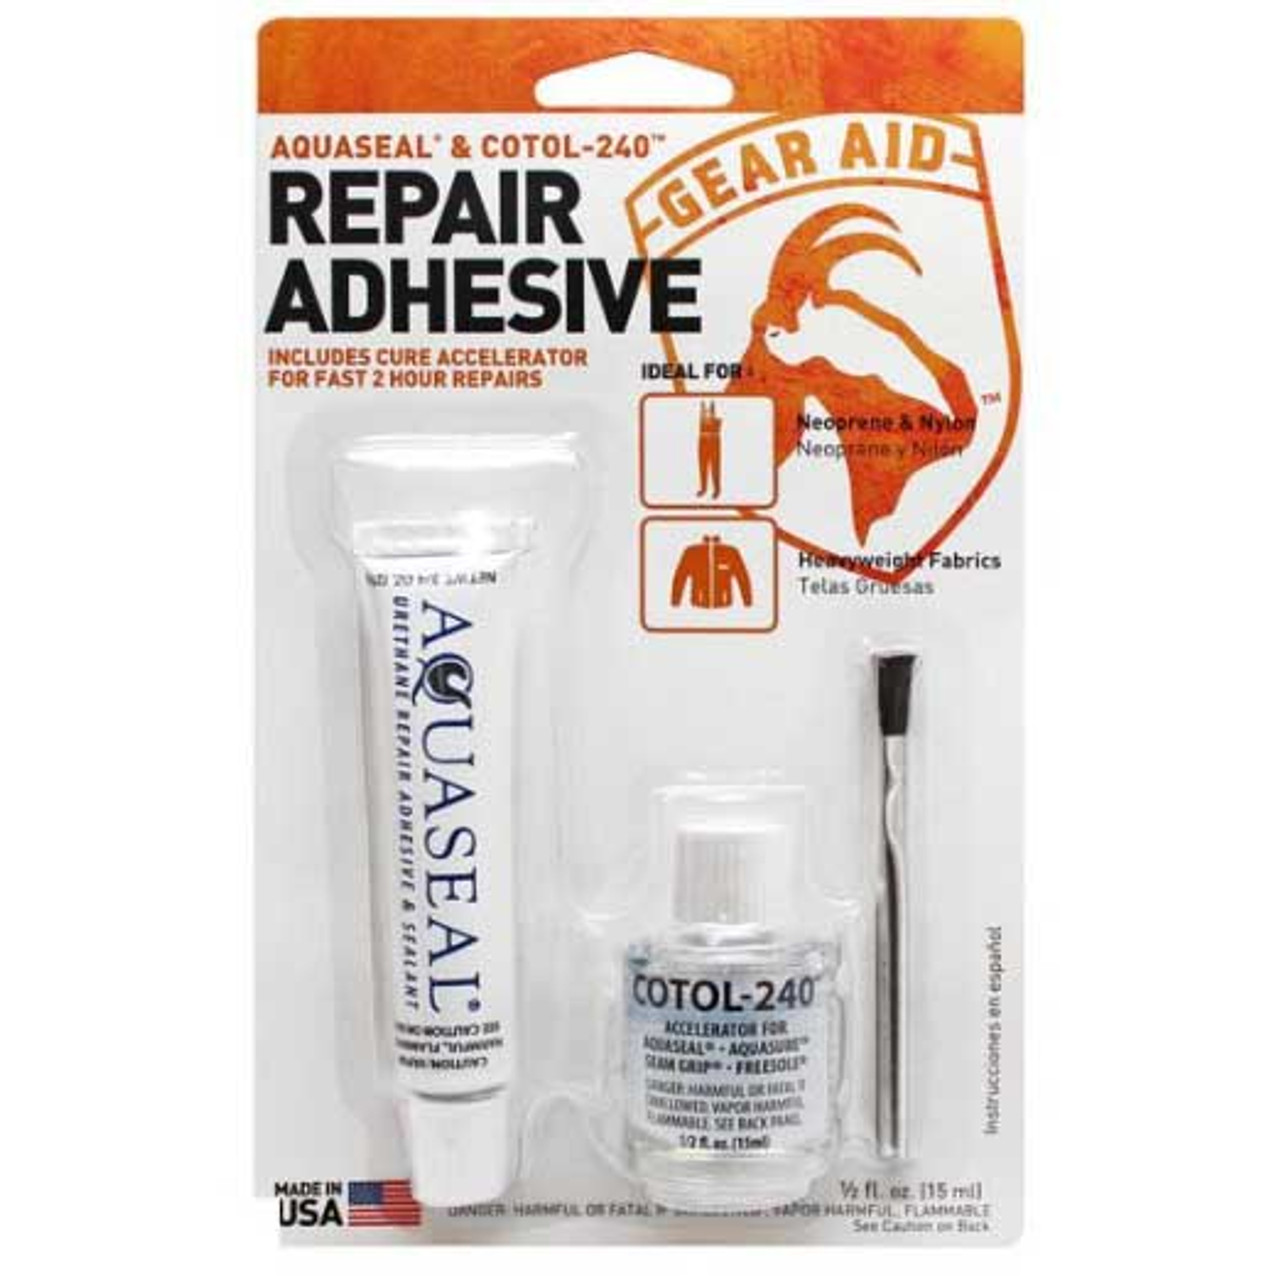 Aquaseal Wader Repair Urethane Repair Adhesive & Sealant with Cotol Combo